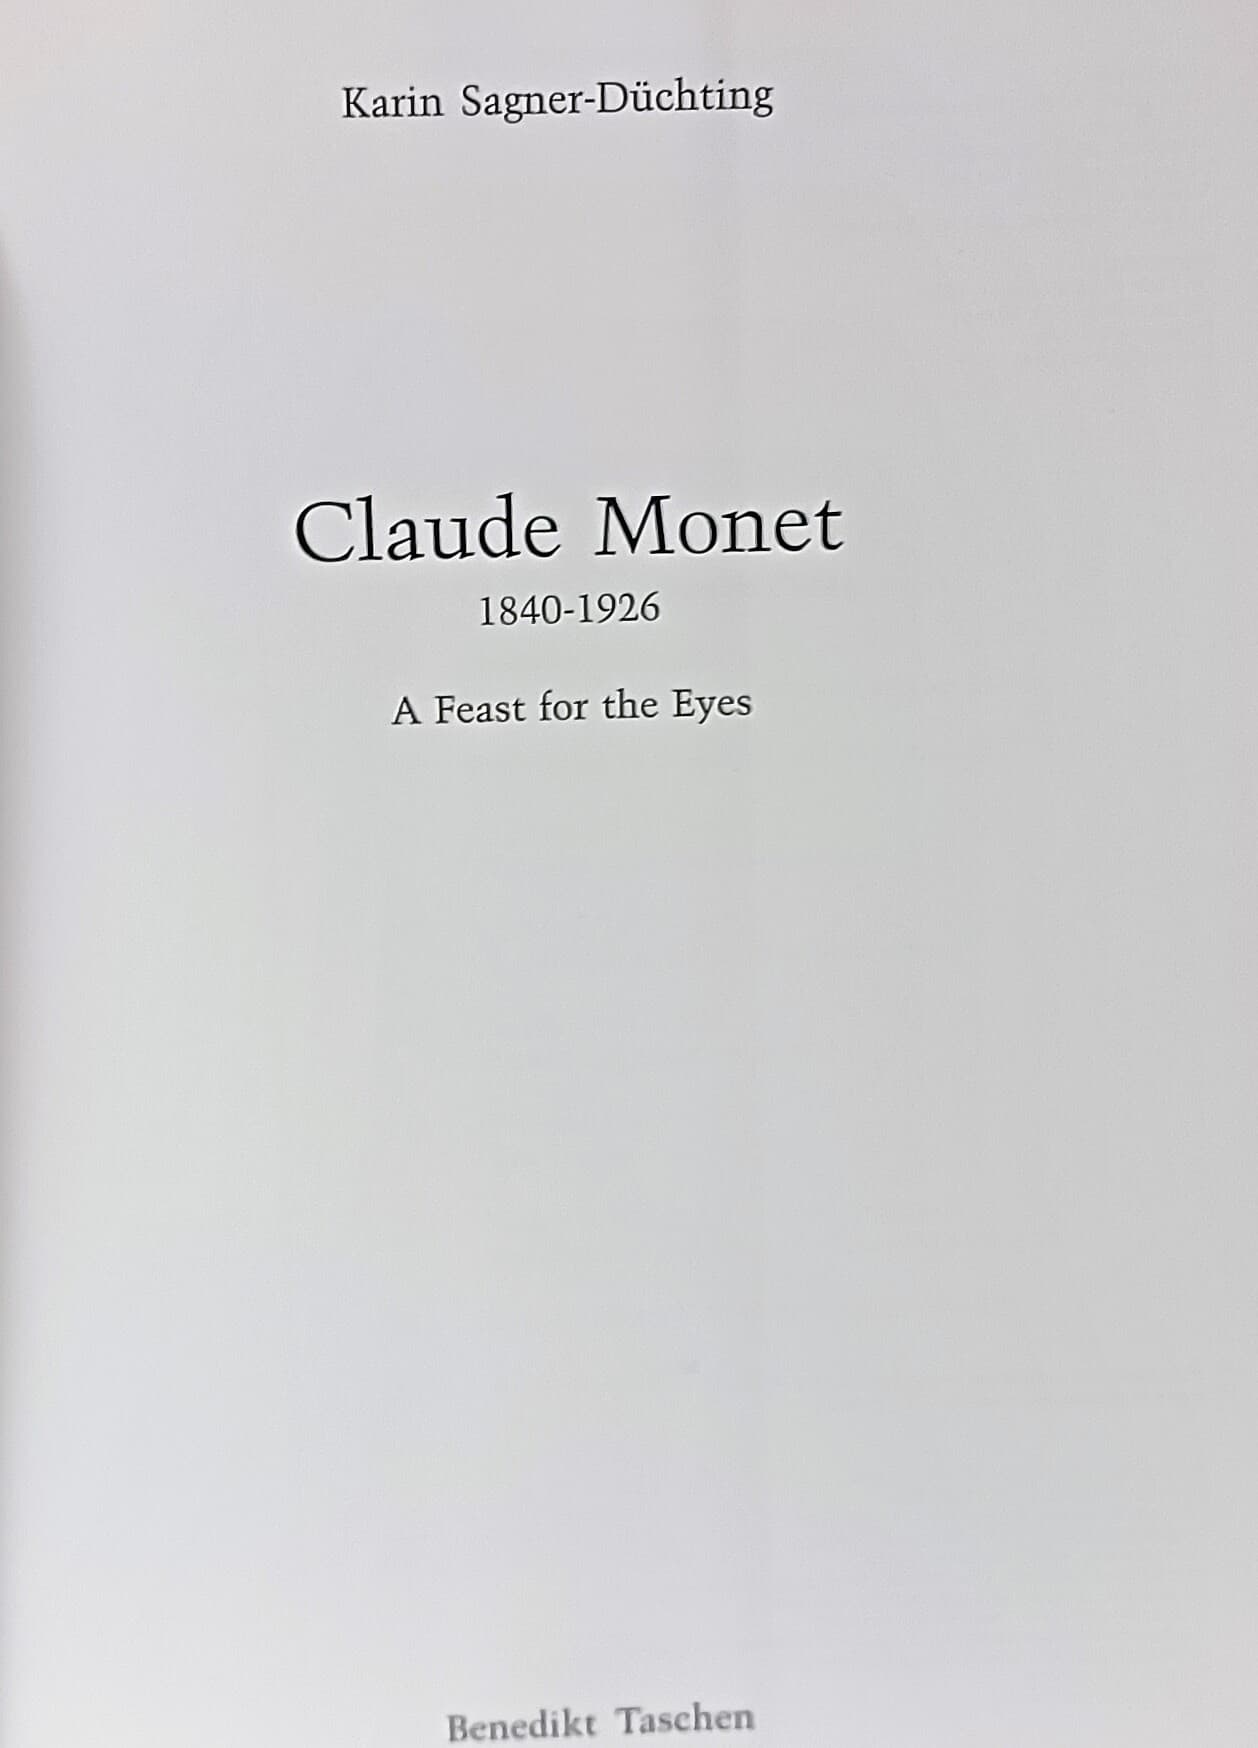 클라우드 모네 -MONET (영문판)-Claude Monet 1840-1926- 242/300/18, 220쪽-서양화 미술도록-